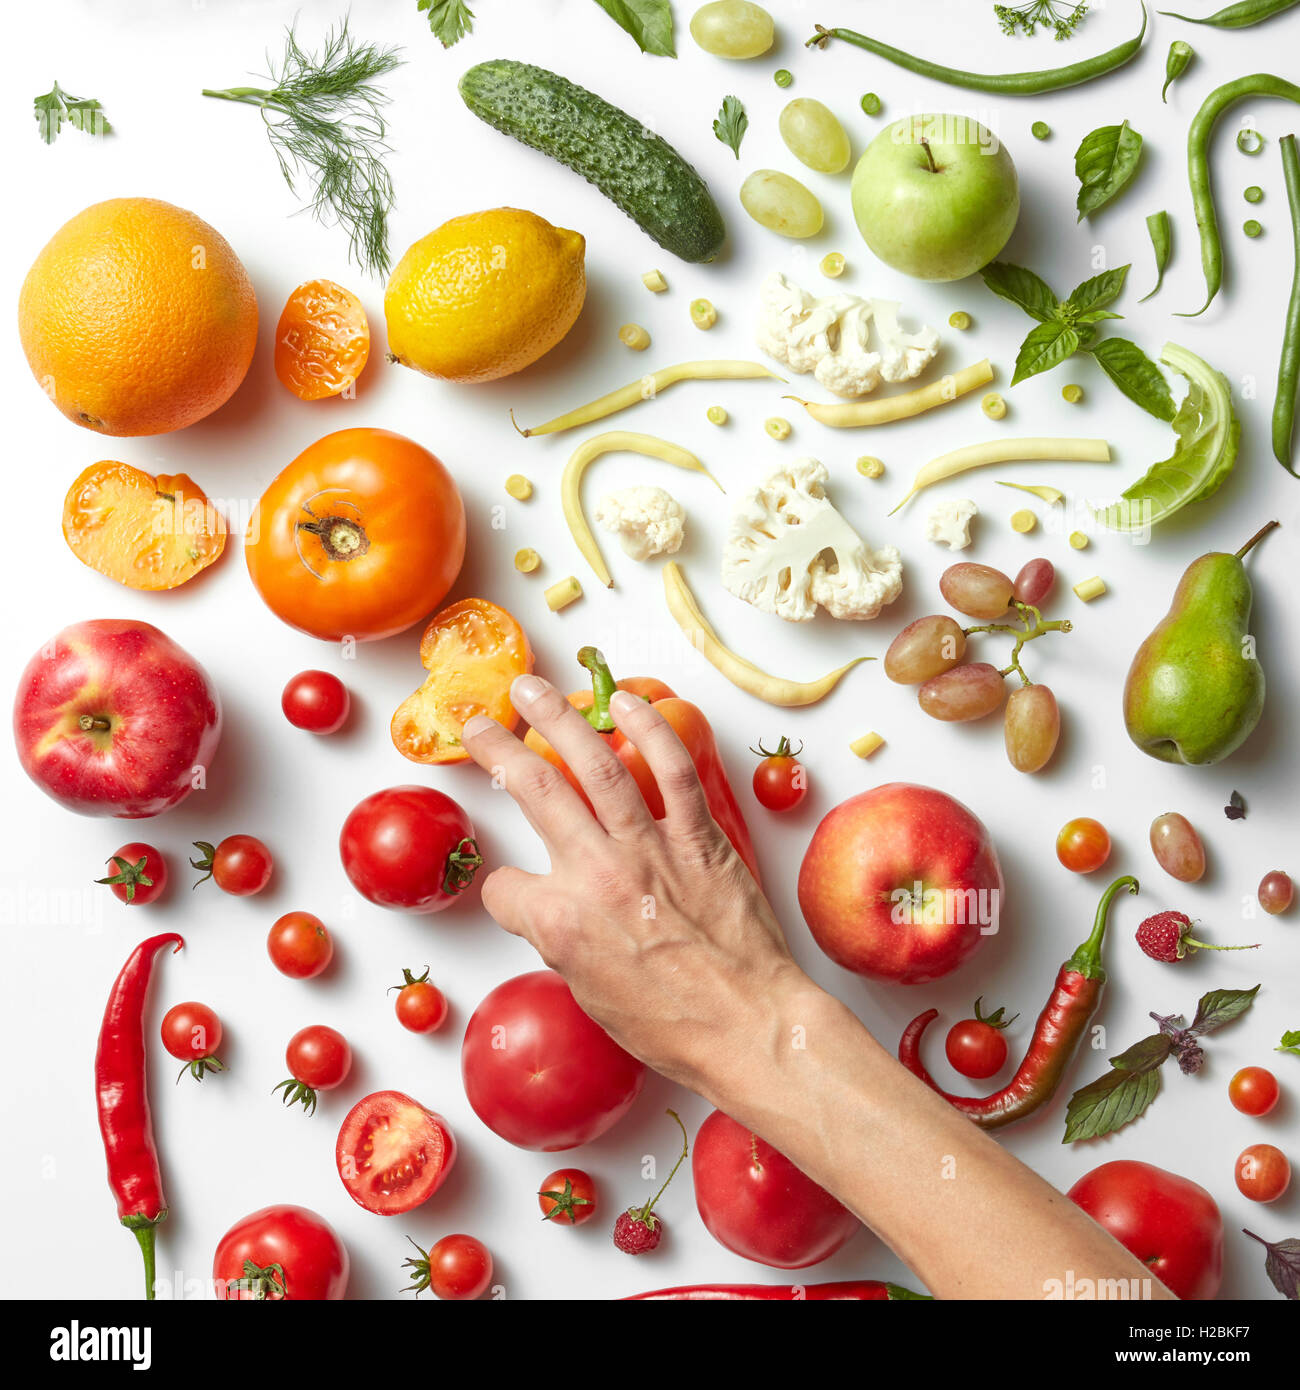 Weibes Hände putting Food auf dem weißen Hintergrund verschiedener Früchte und Gemüse auf weißem Hintergrund, Ansicht von oben. Gewichtsverlust, Stockfoto